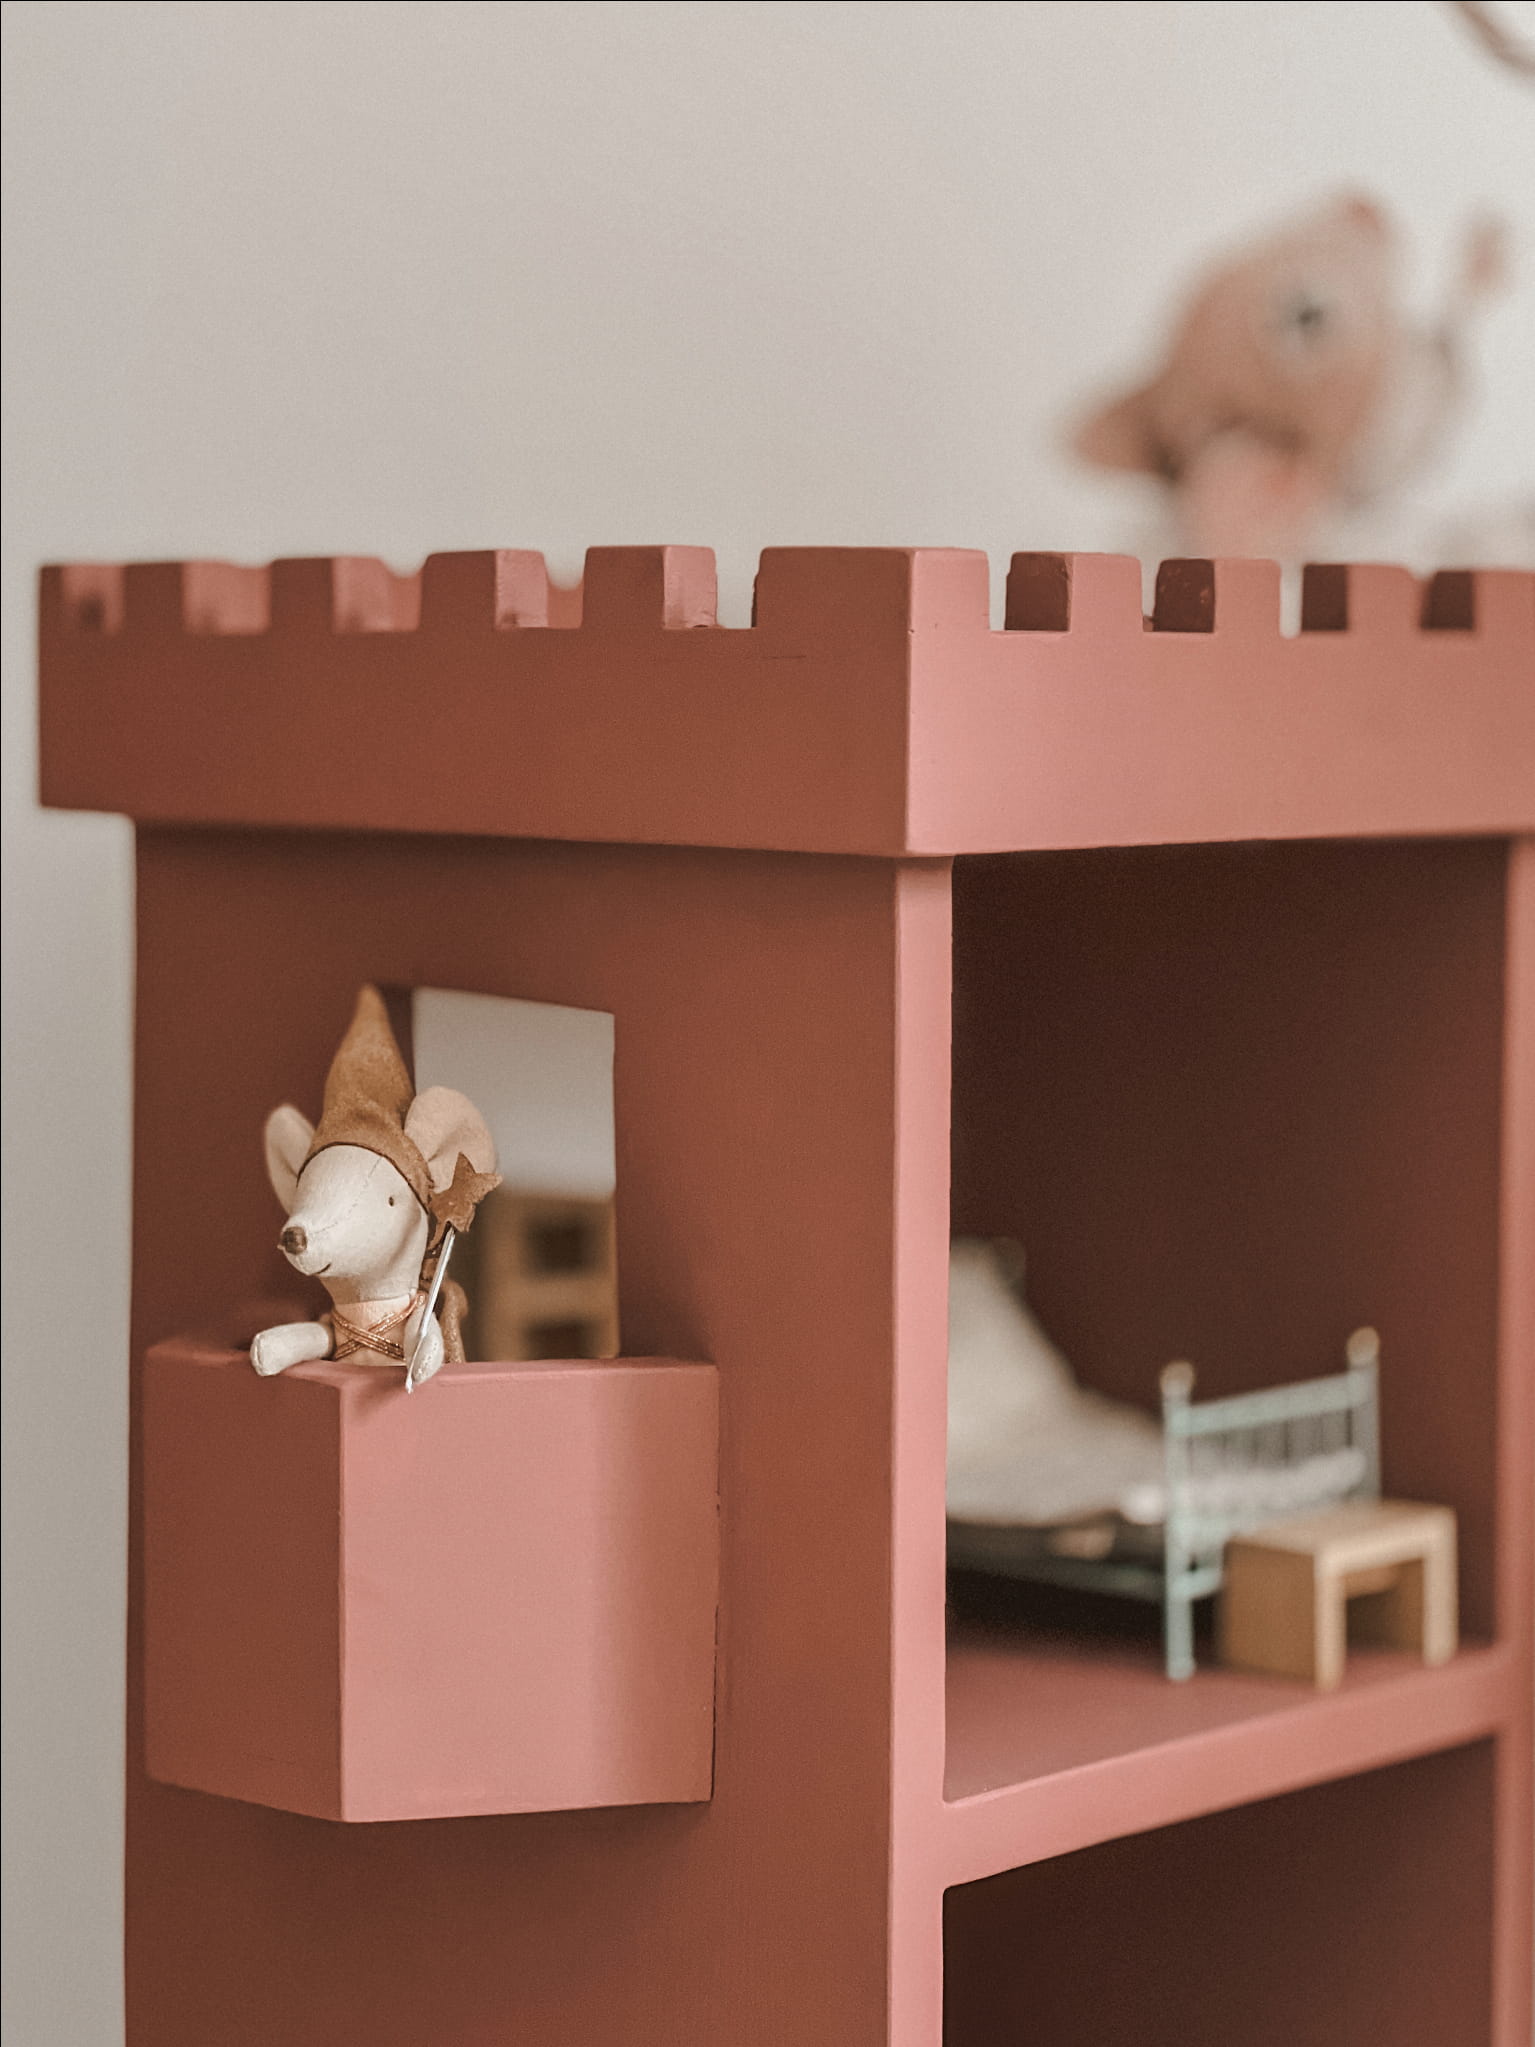 Drewniany regalik, domek dla myszek lub lalek w postaci zamkowej wieży.